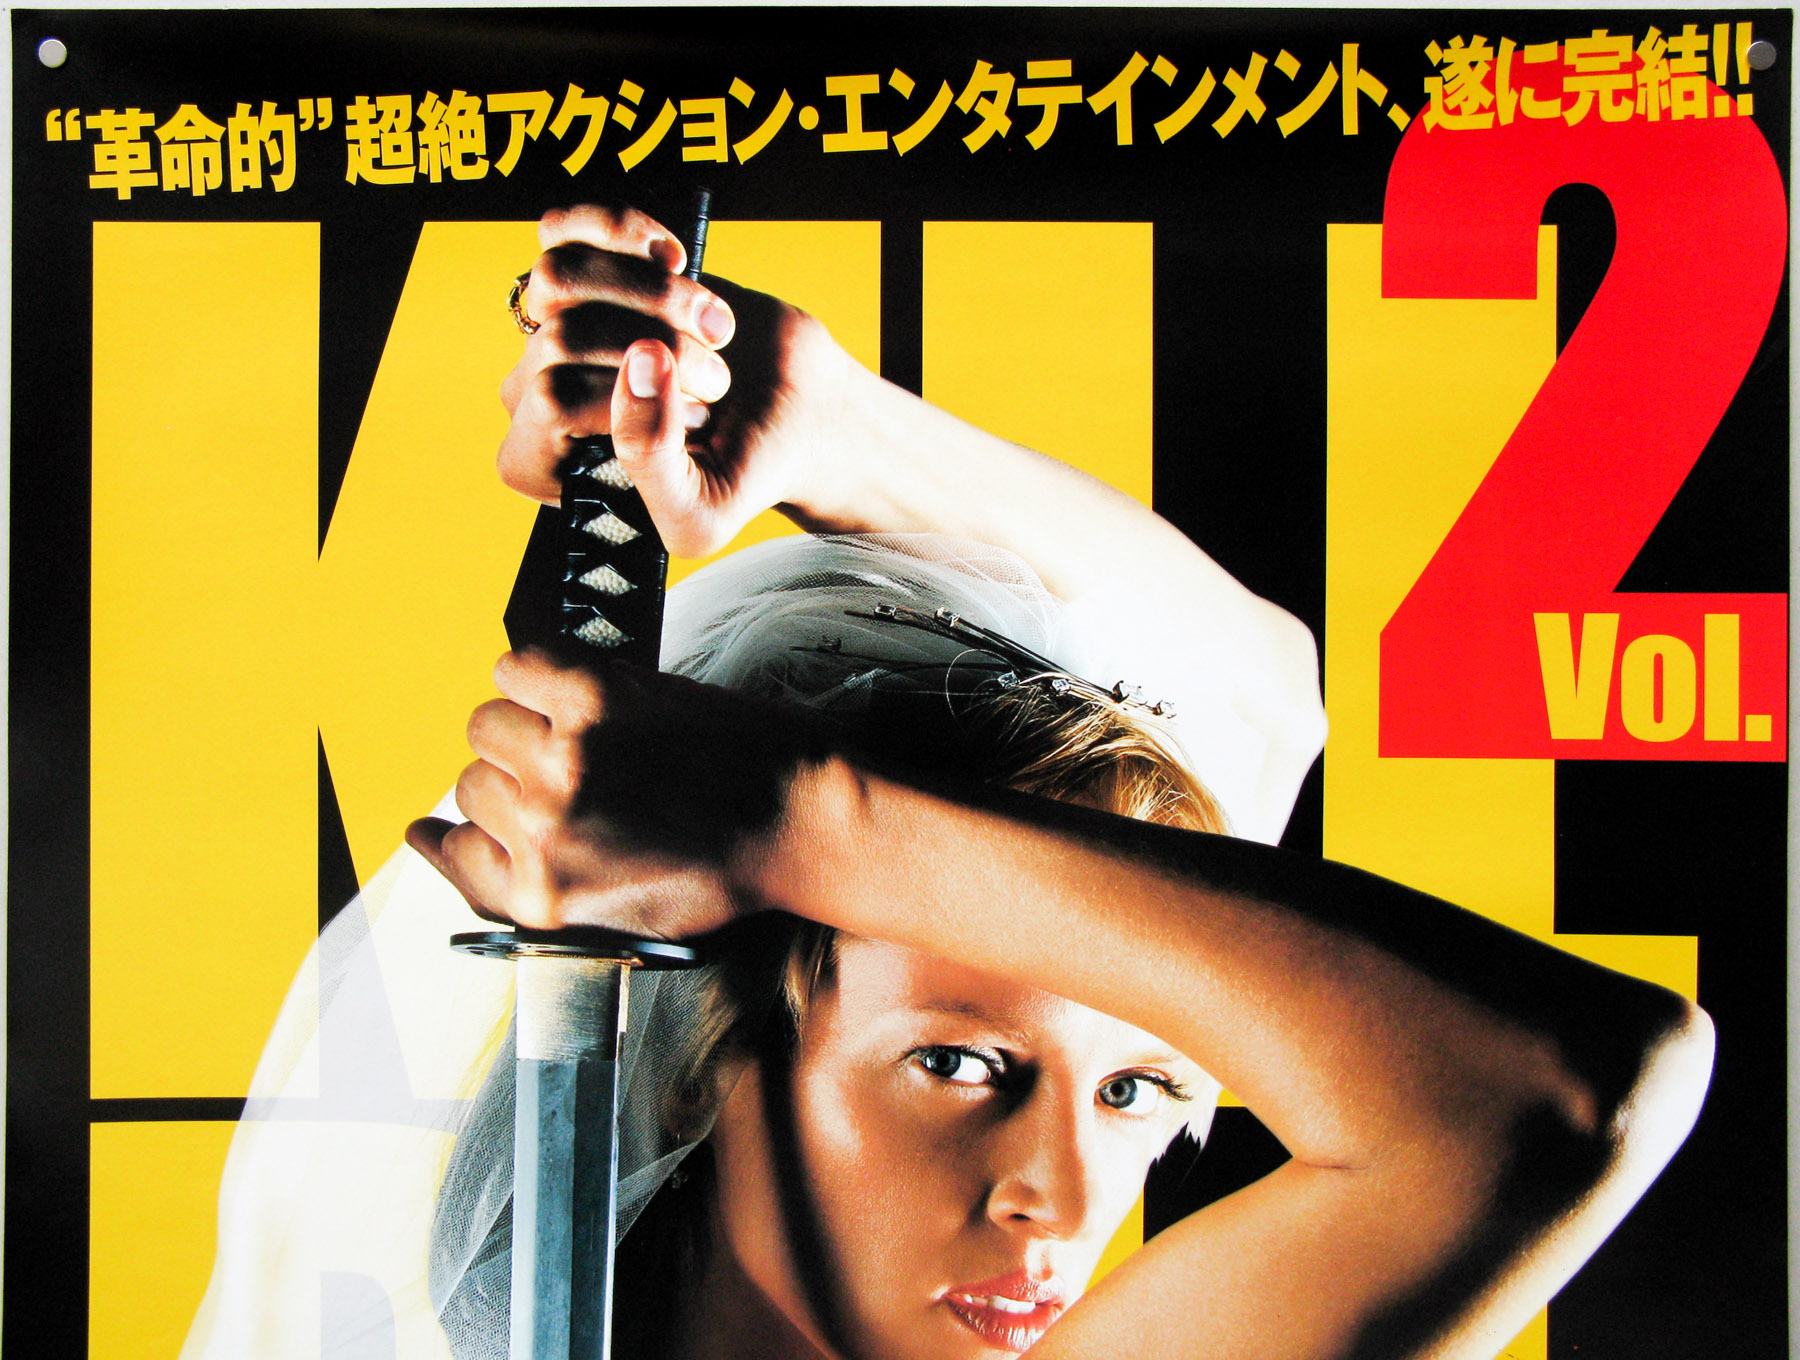 Kill Vol. 2 / B2 DVD / Japan